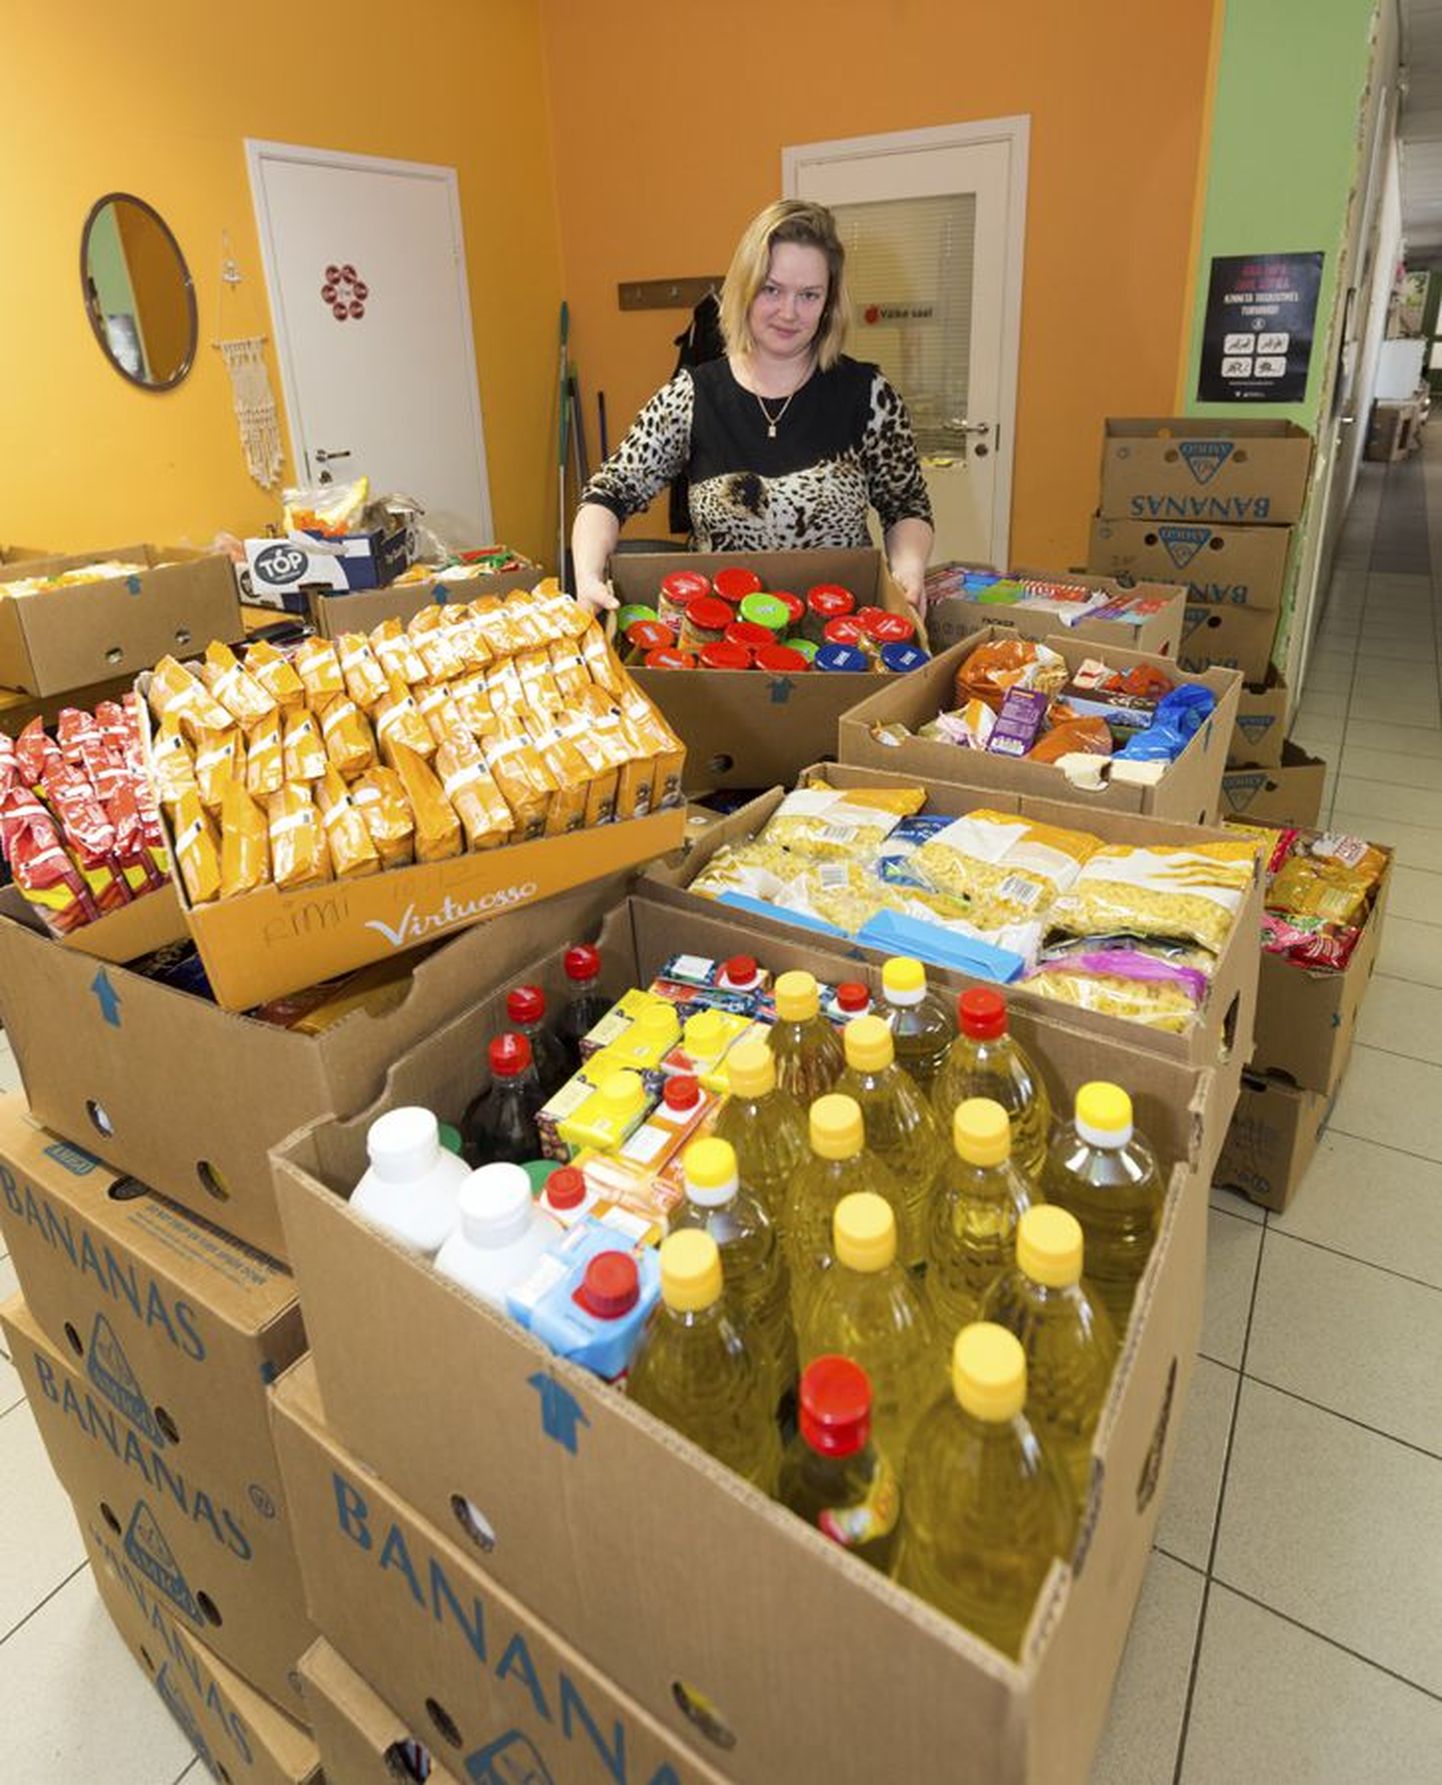 Viljandimaa Toidupanga koordinaator Teivi Toomsalu oli pildistamise ajal sorteerimas toidukraami, mille annetasid Uku keskuses Rimi kaupluse külastajad laupäeval.